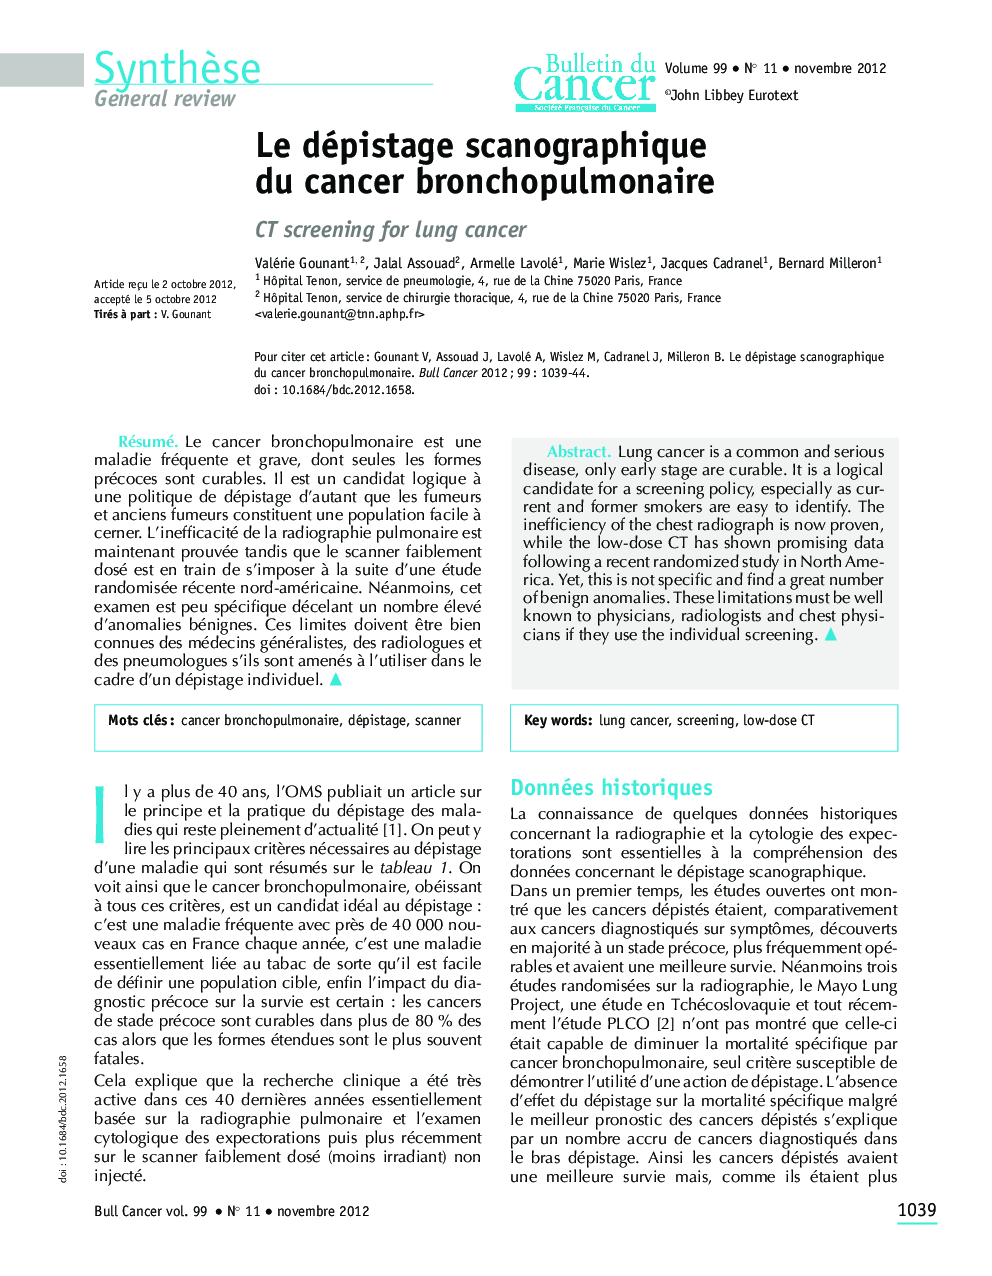 Le dépistage scanographique du cancer bronchopulmonaire